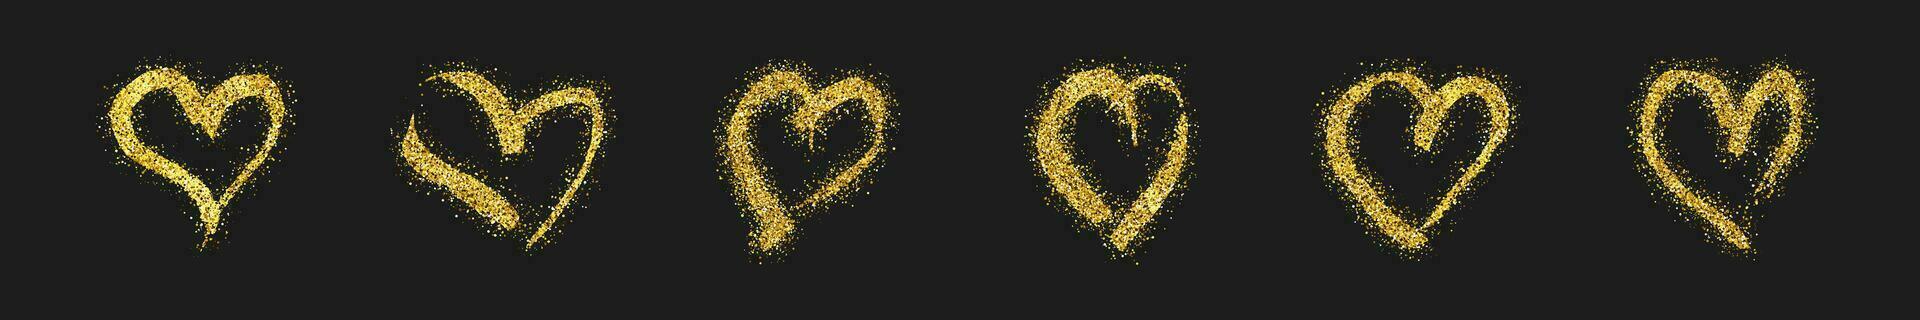 einstellen von sechs Gold funkeln Gekritzel Herzen auf dunkel Hintergrund. Gold Grunge Hand gezeichnet Herz. romantisch Liebe Symbol. Vektor Illustration.